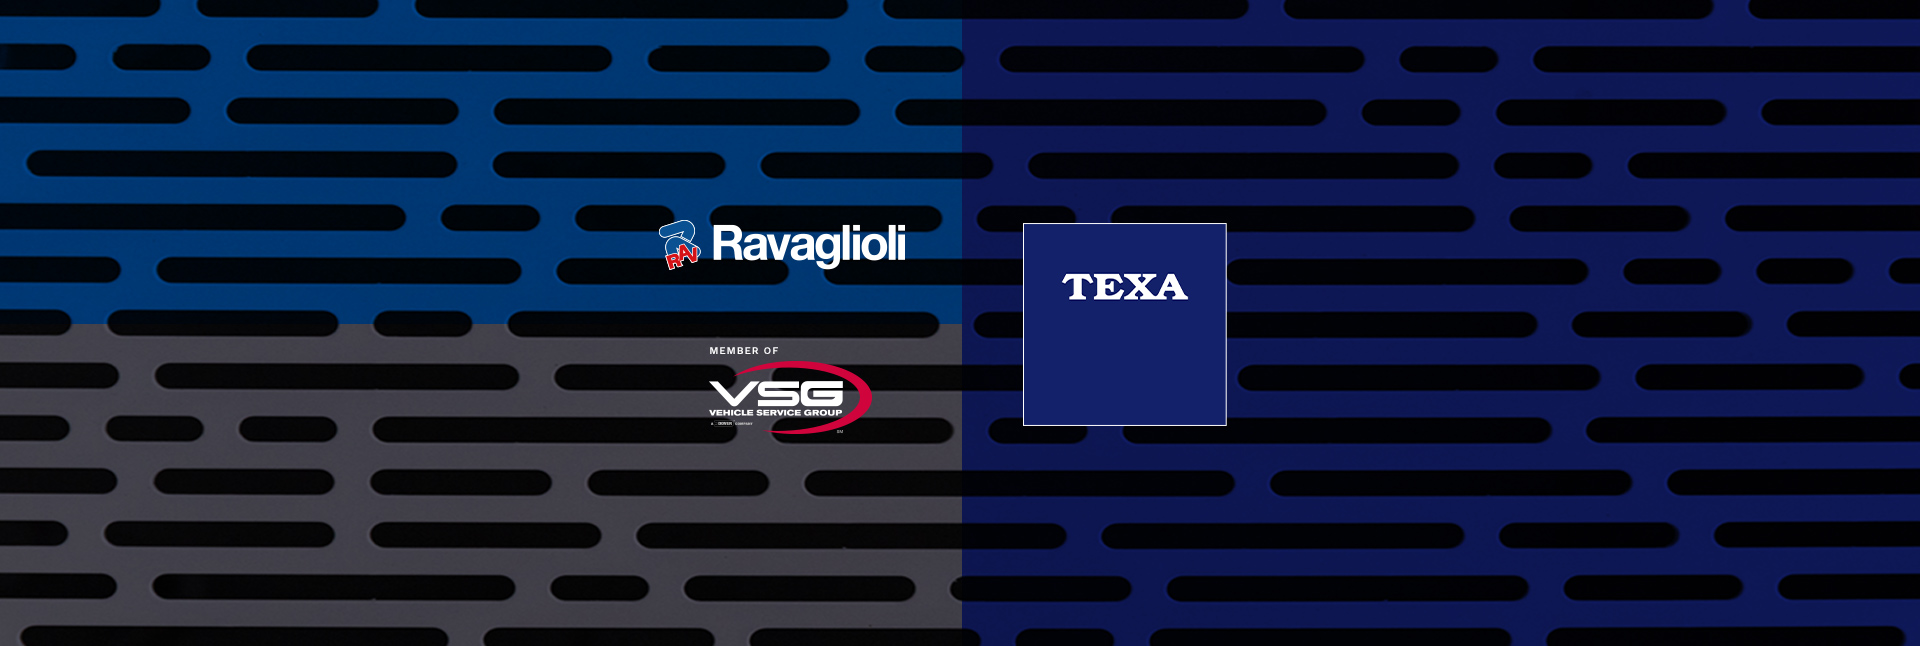 New alliance between Ravaglioli and TEXA